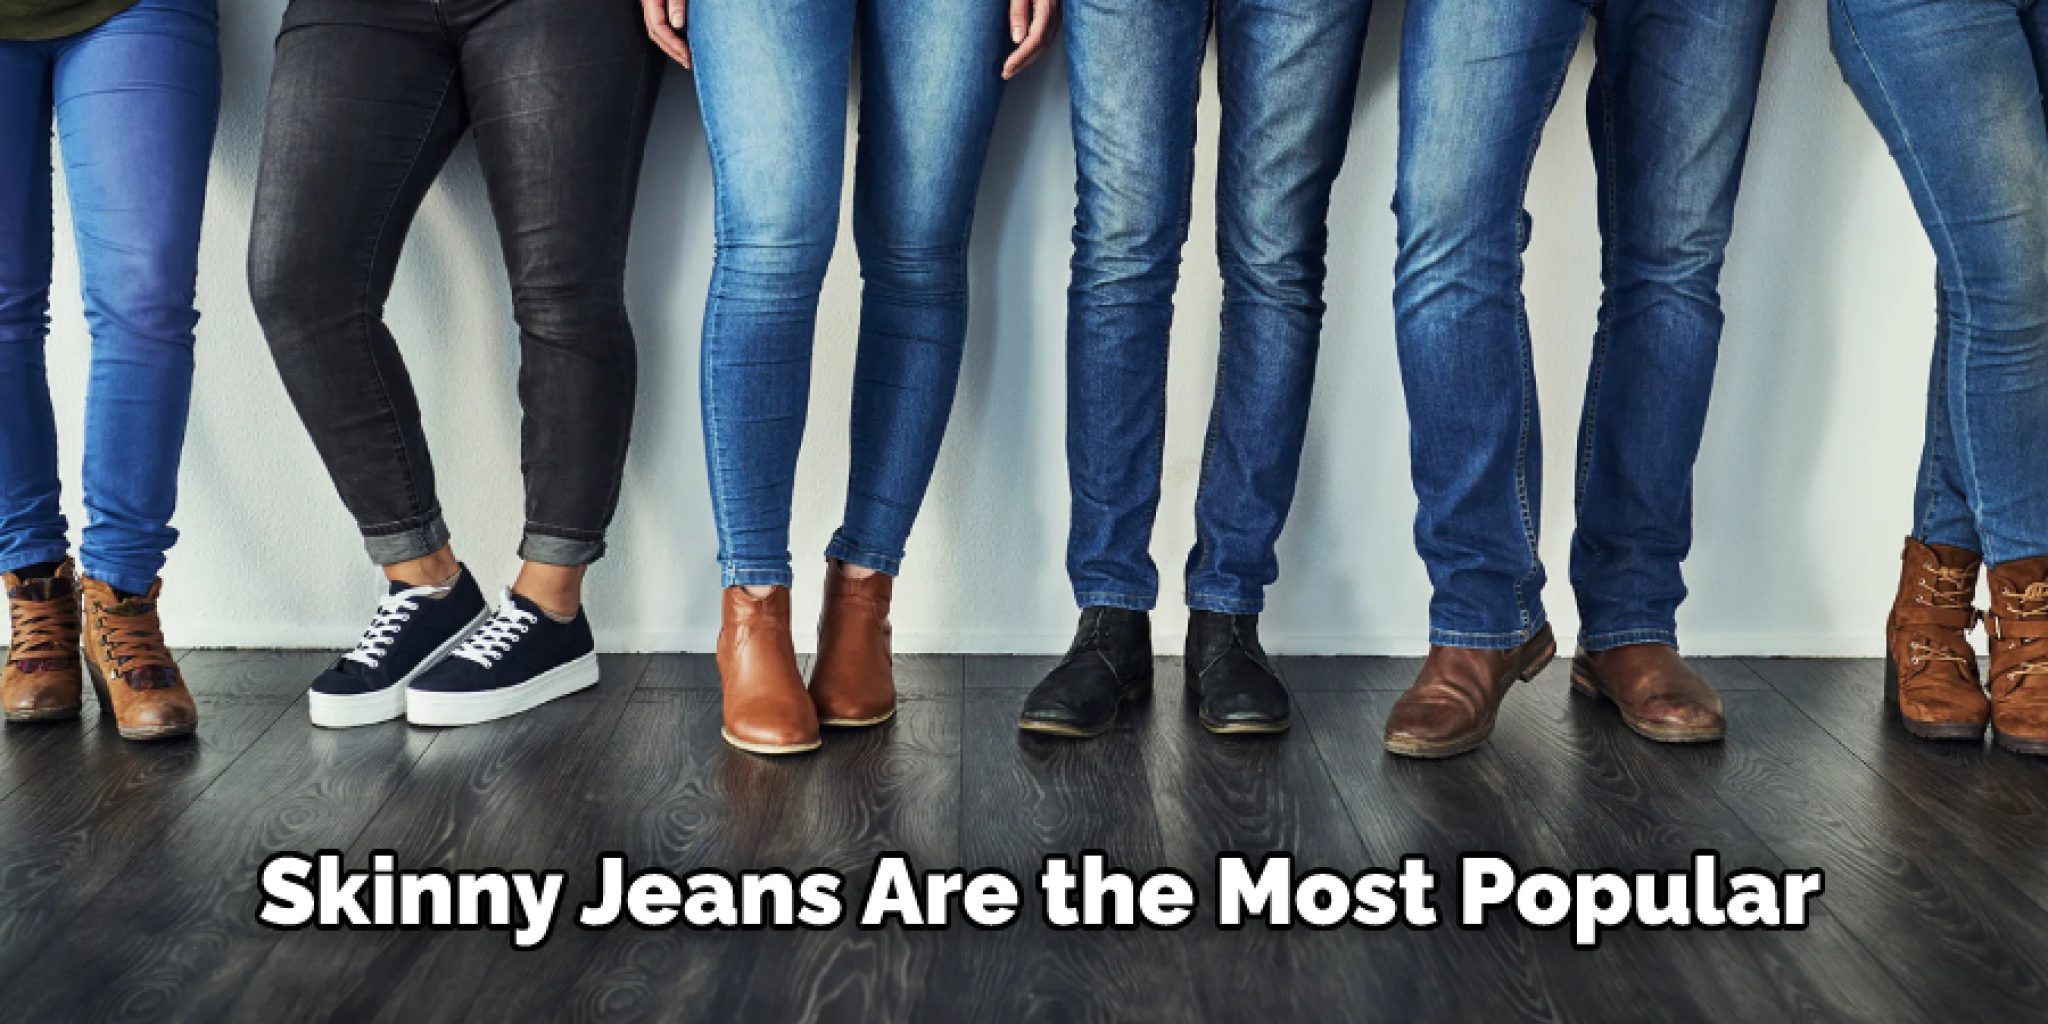 I like wearing jeans. Джинсы мужские и женские. Виды джинсов. Модные оттенки джинсов. Джинсы реклама.